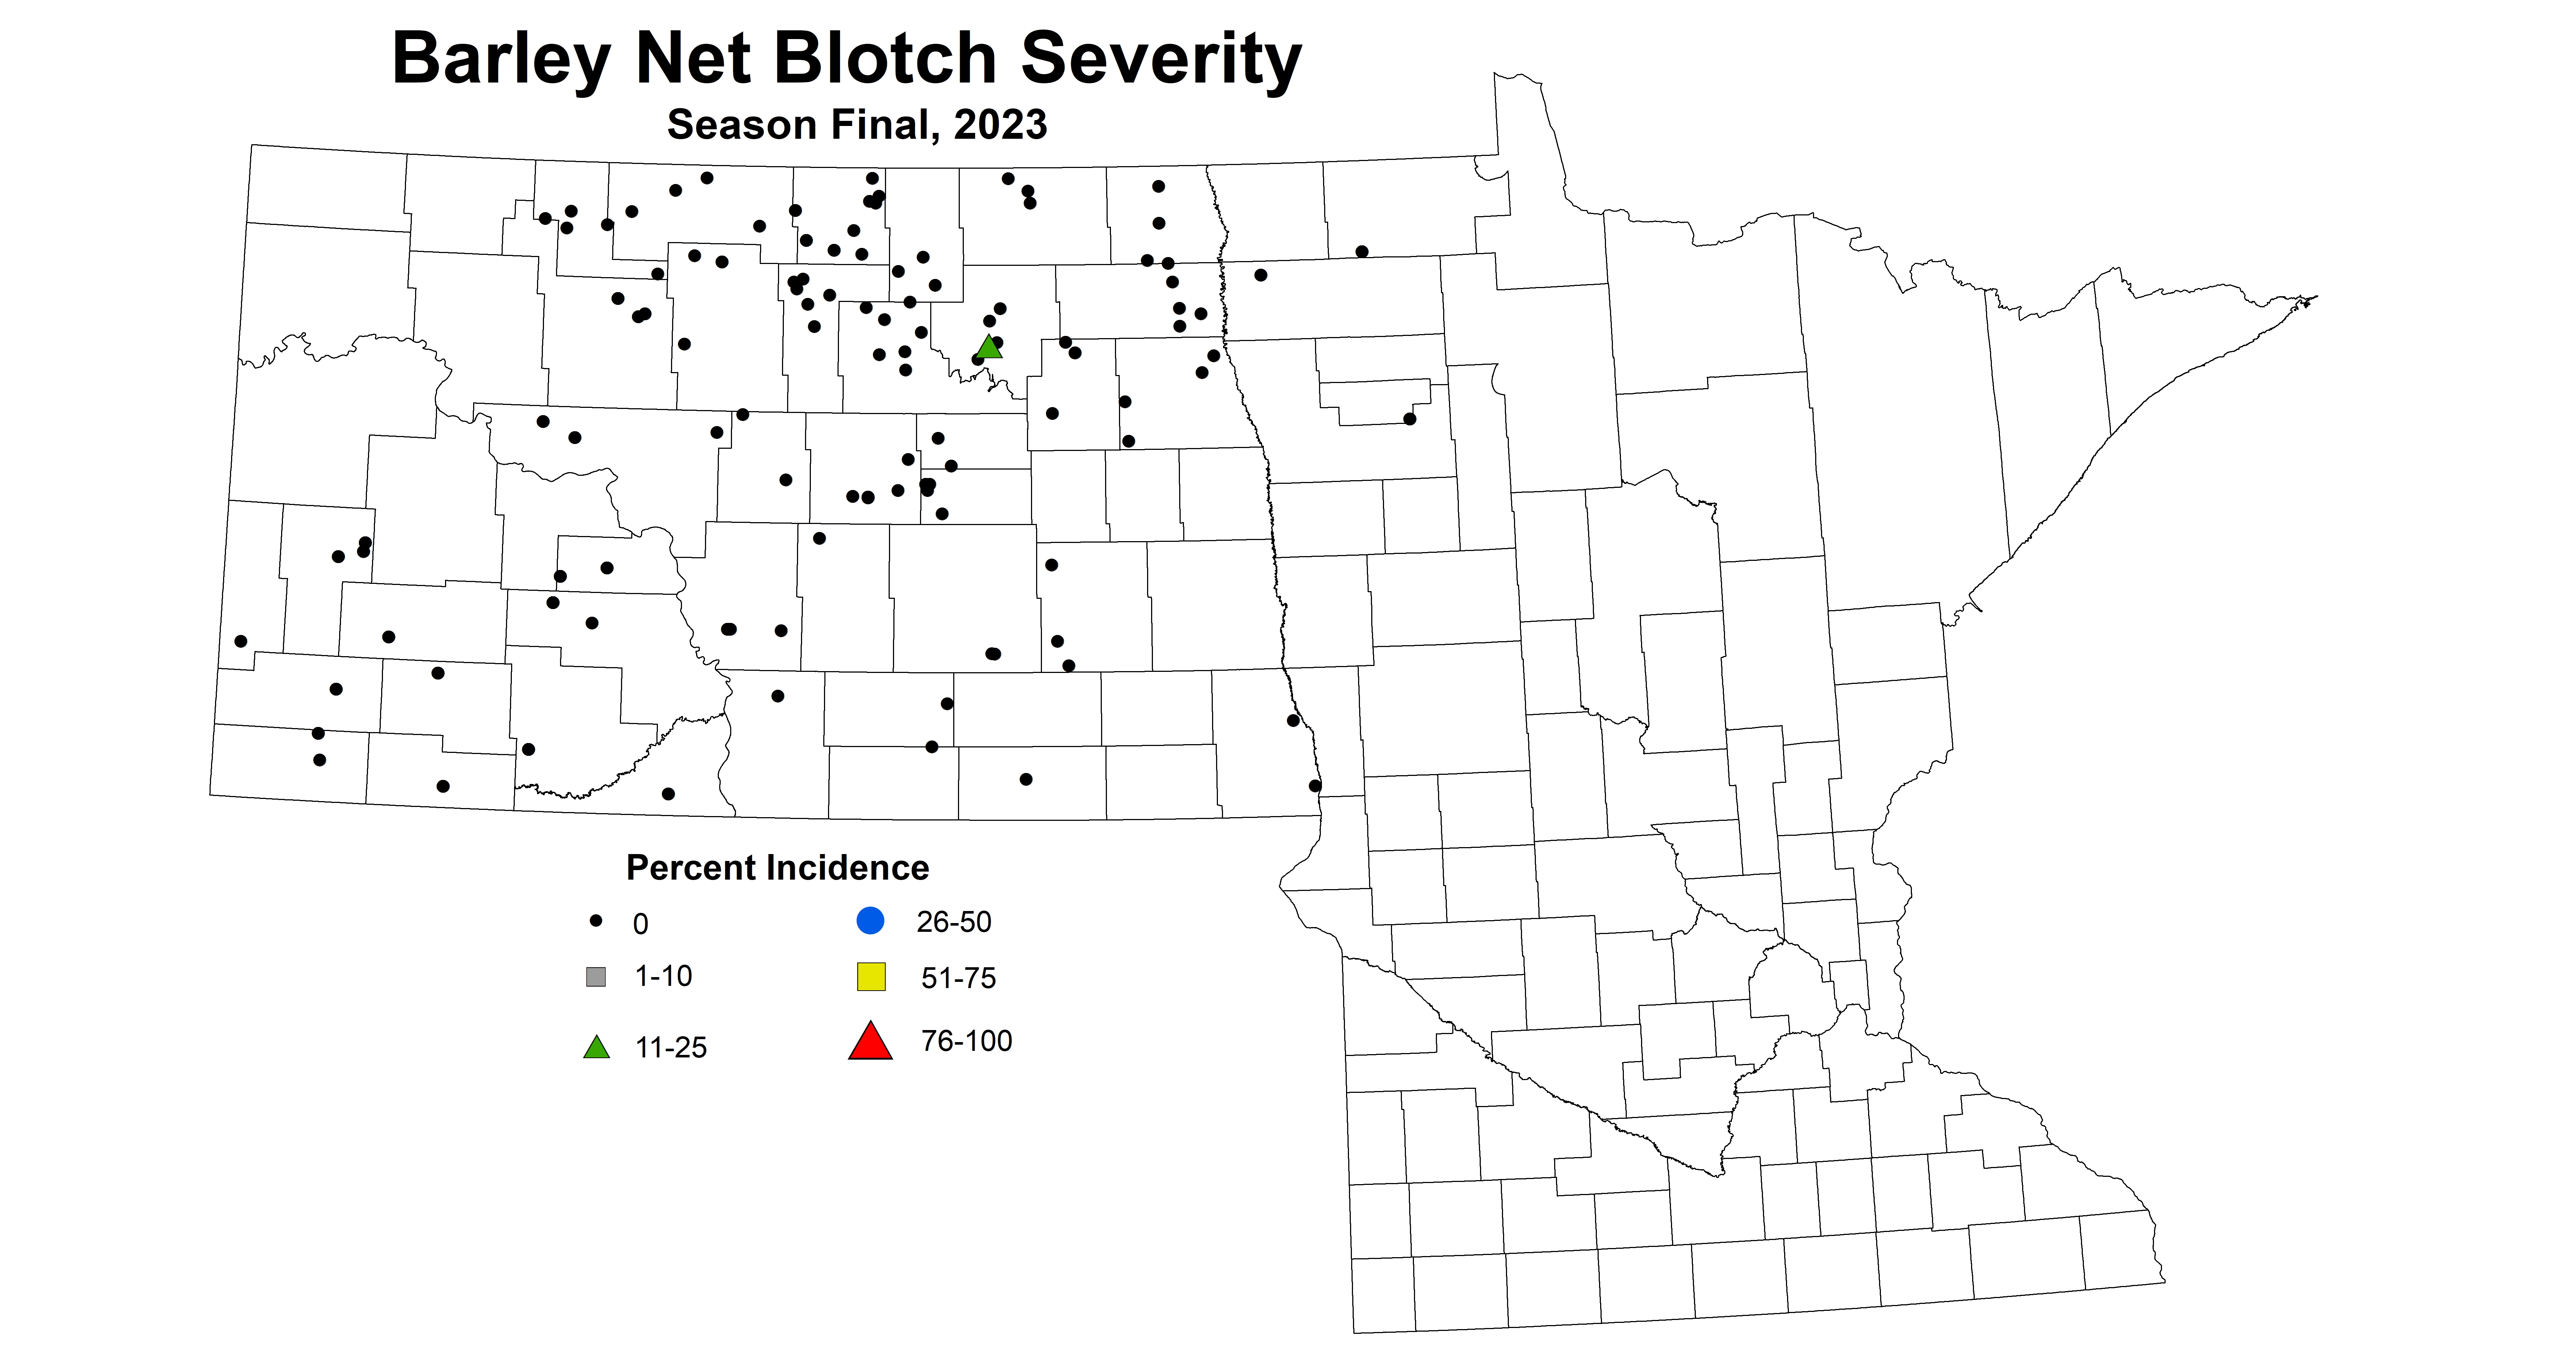 barley net blotch severity season final 2023